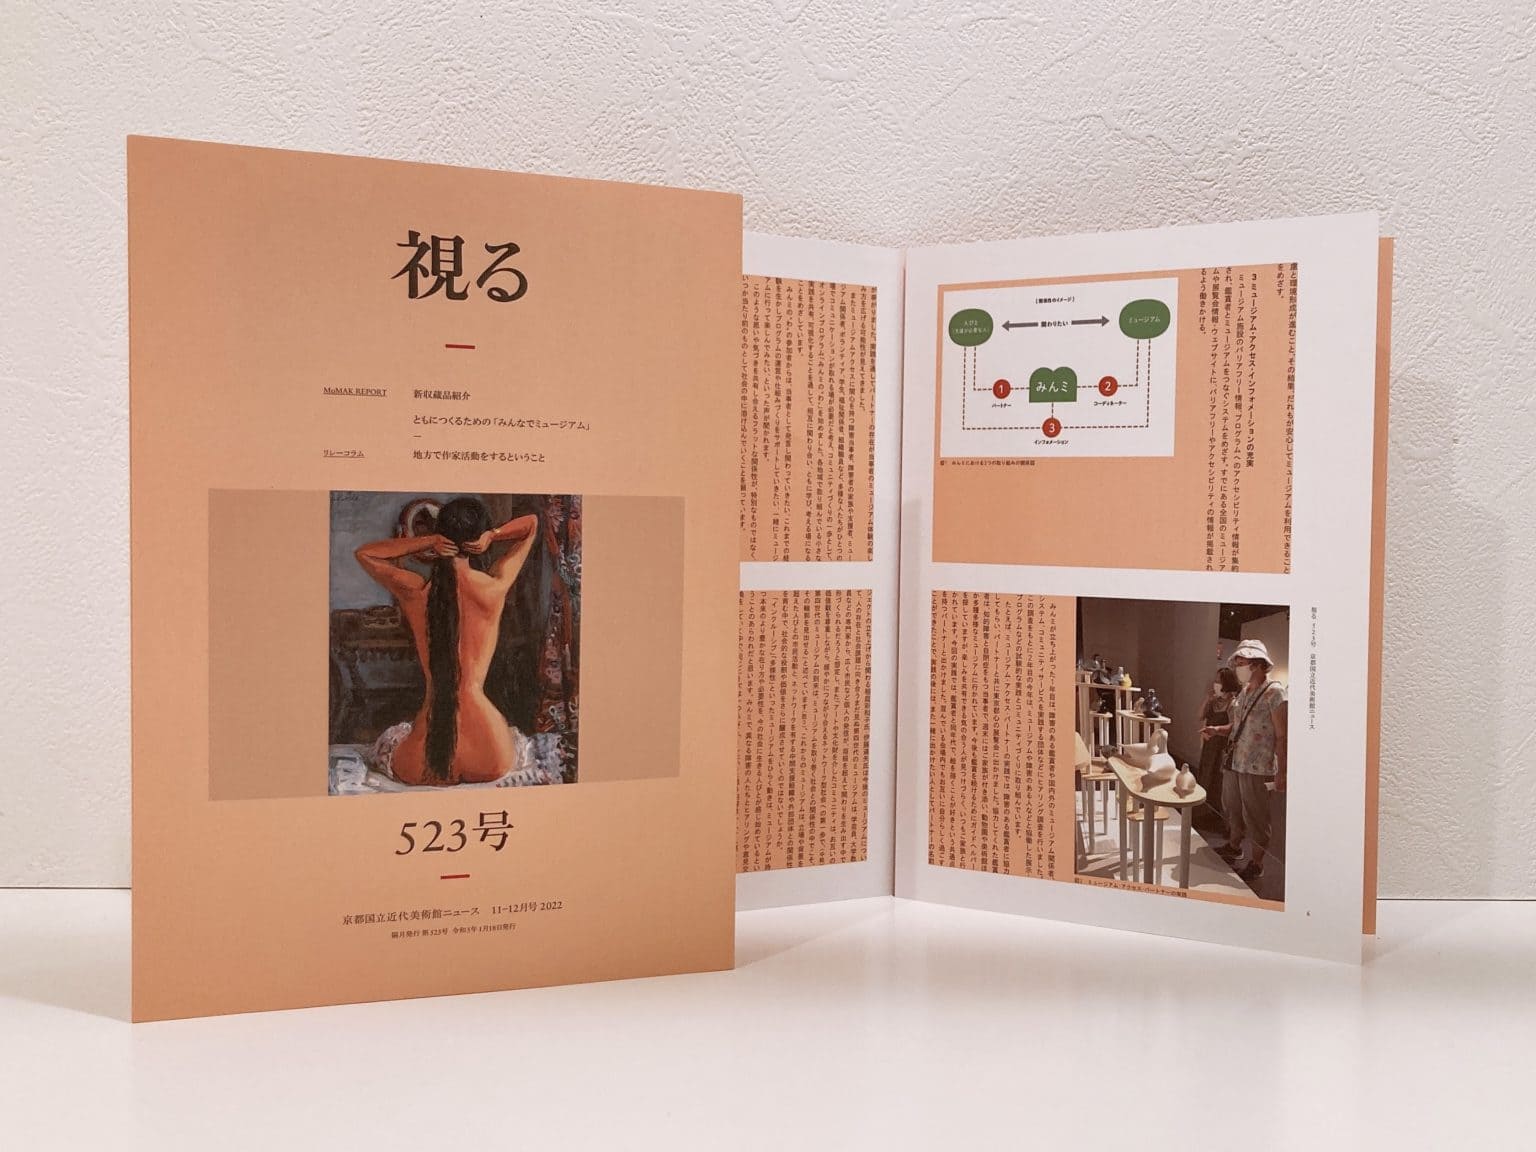 京都国立近代美術館から発行された冊子の全体像